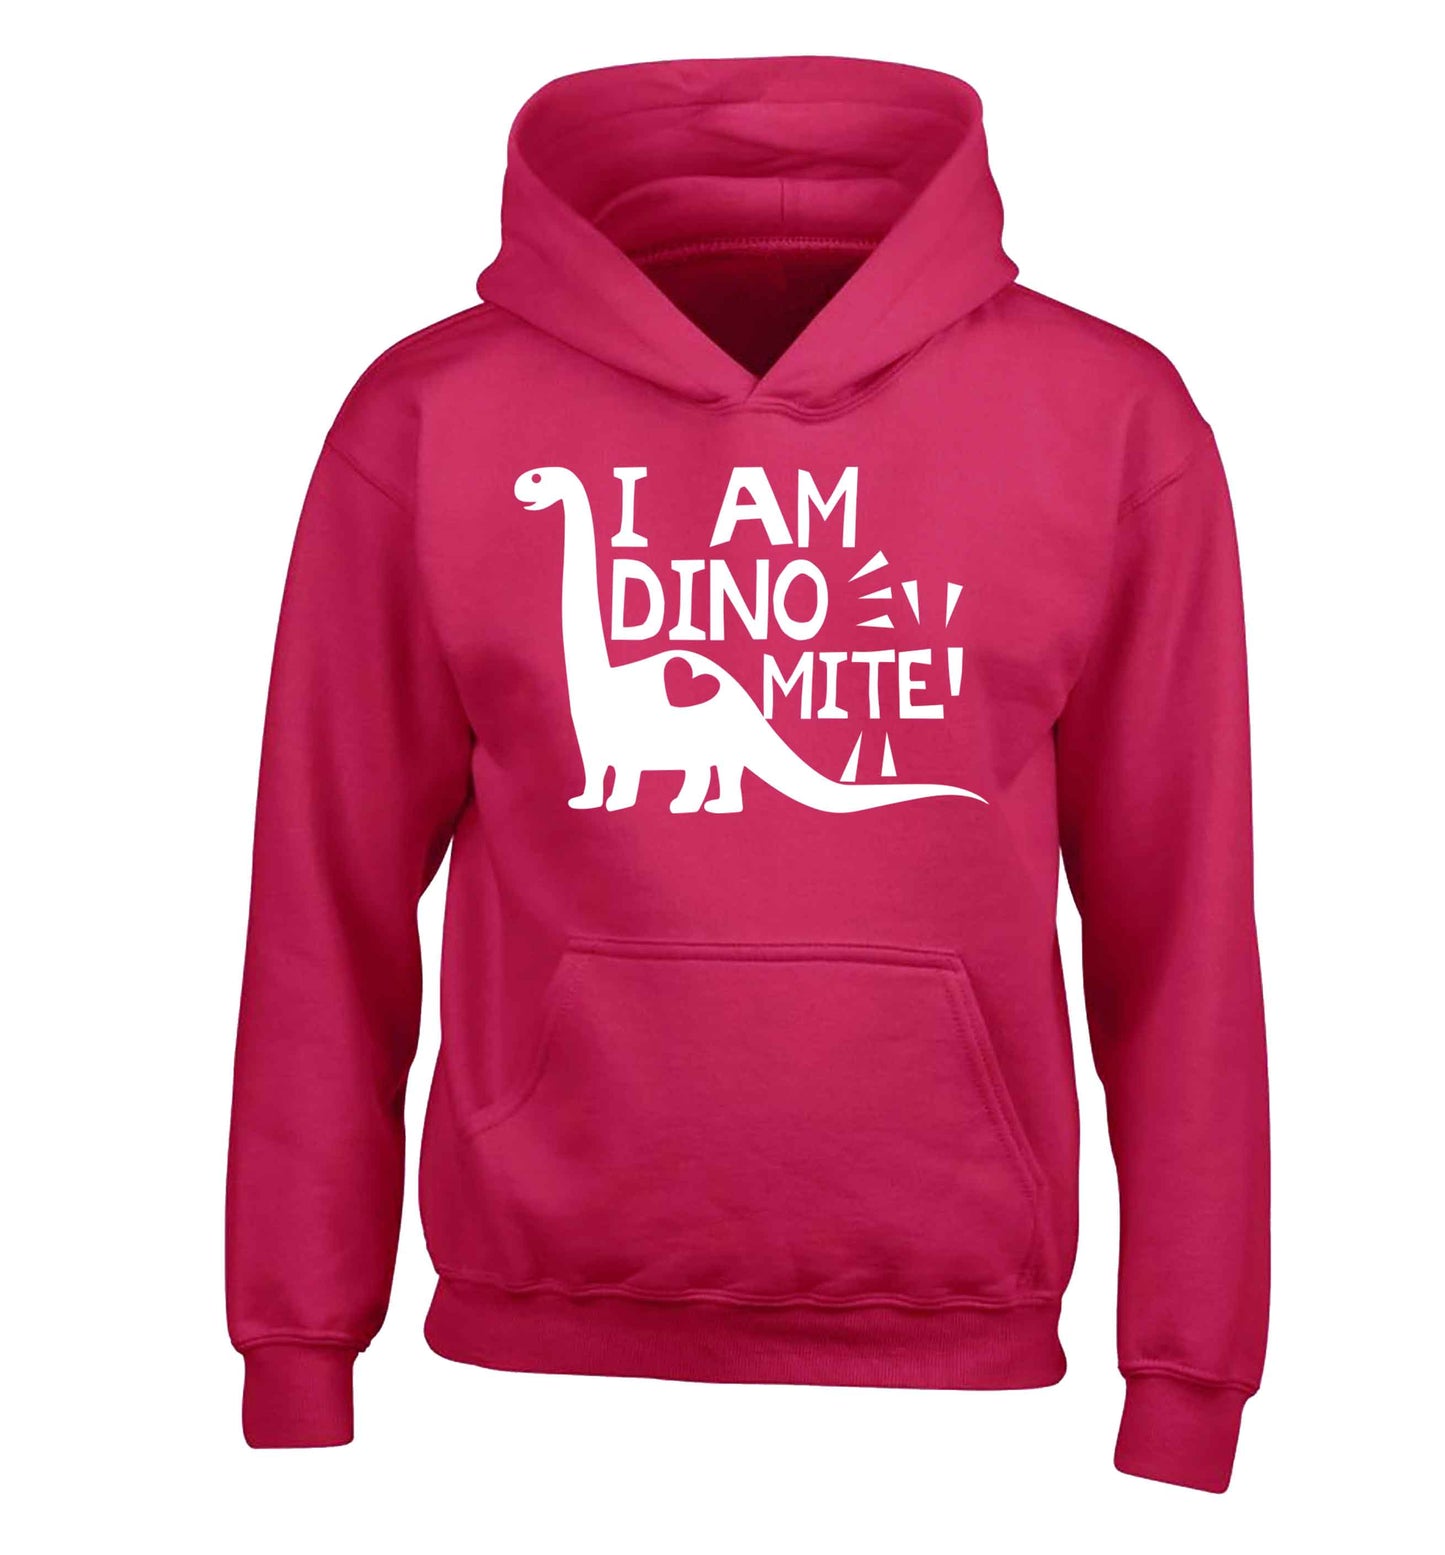 I am dinomite! children's pink hoodie 12-13 Years